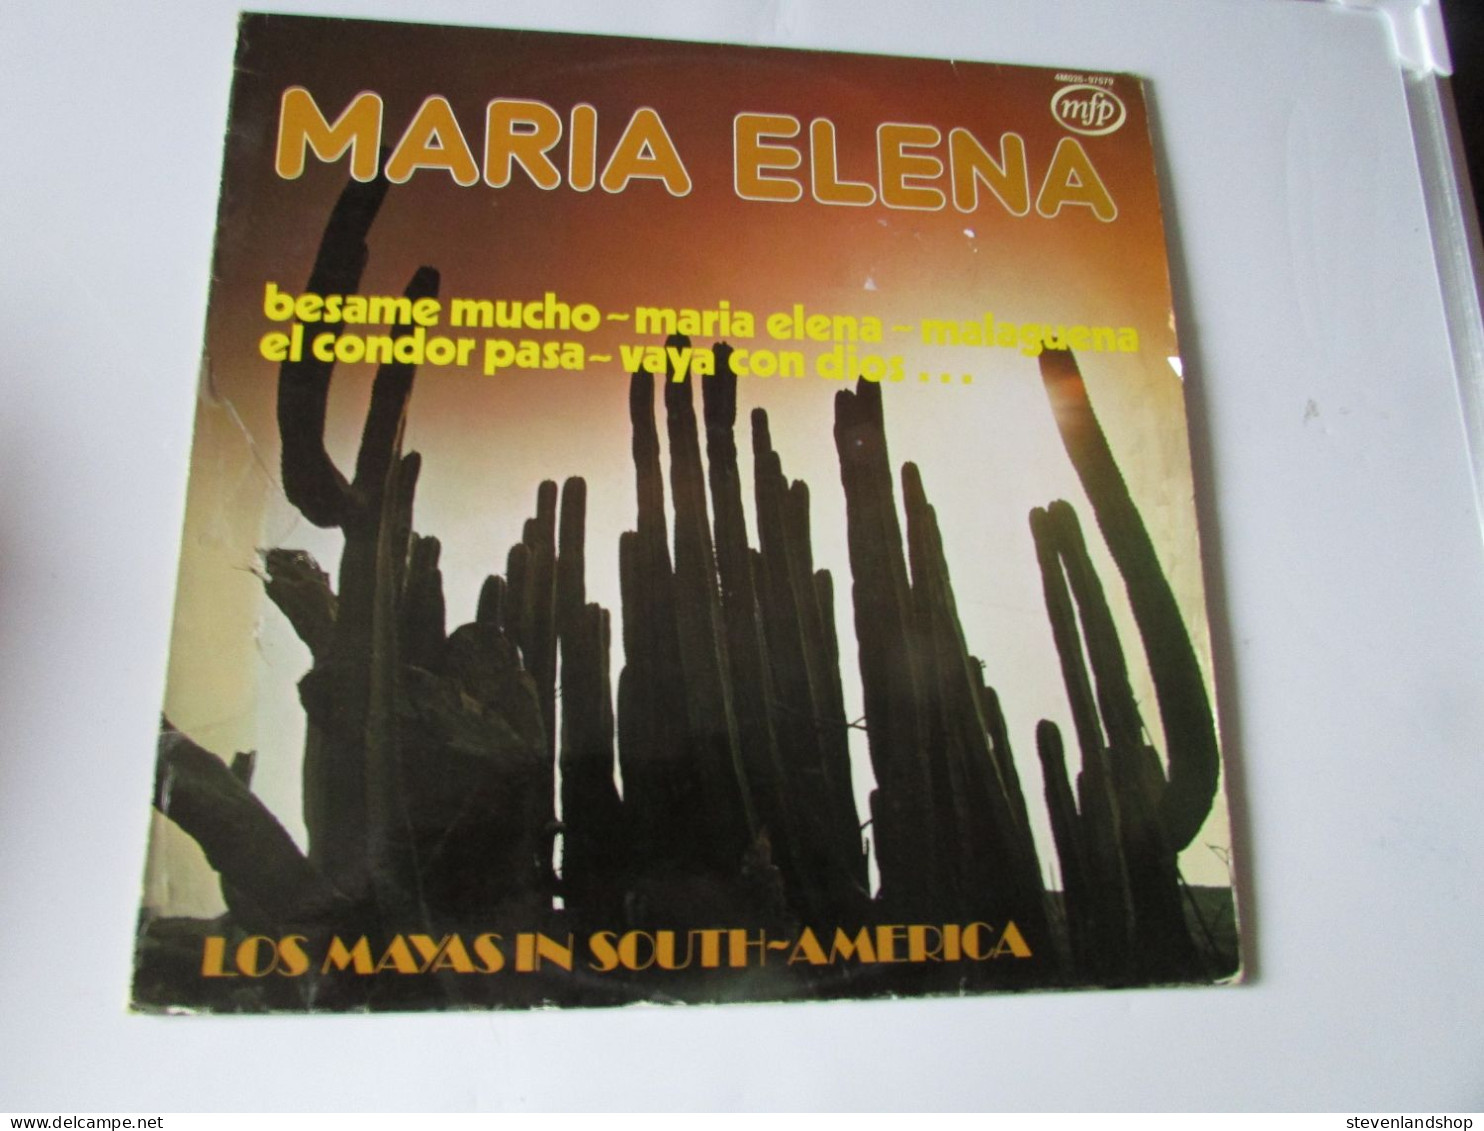 LOS MAYAS IN SOUTH - AMERICA, MARIA ELENA, LP - Otros - Canción Española